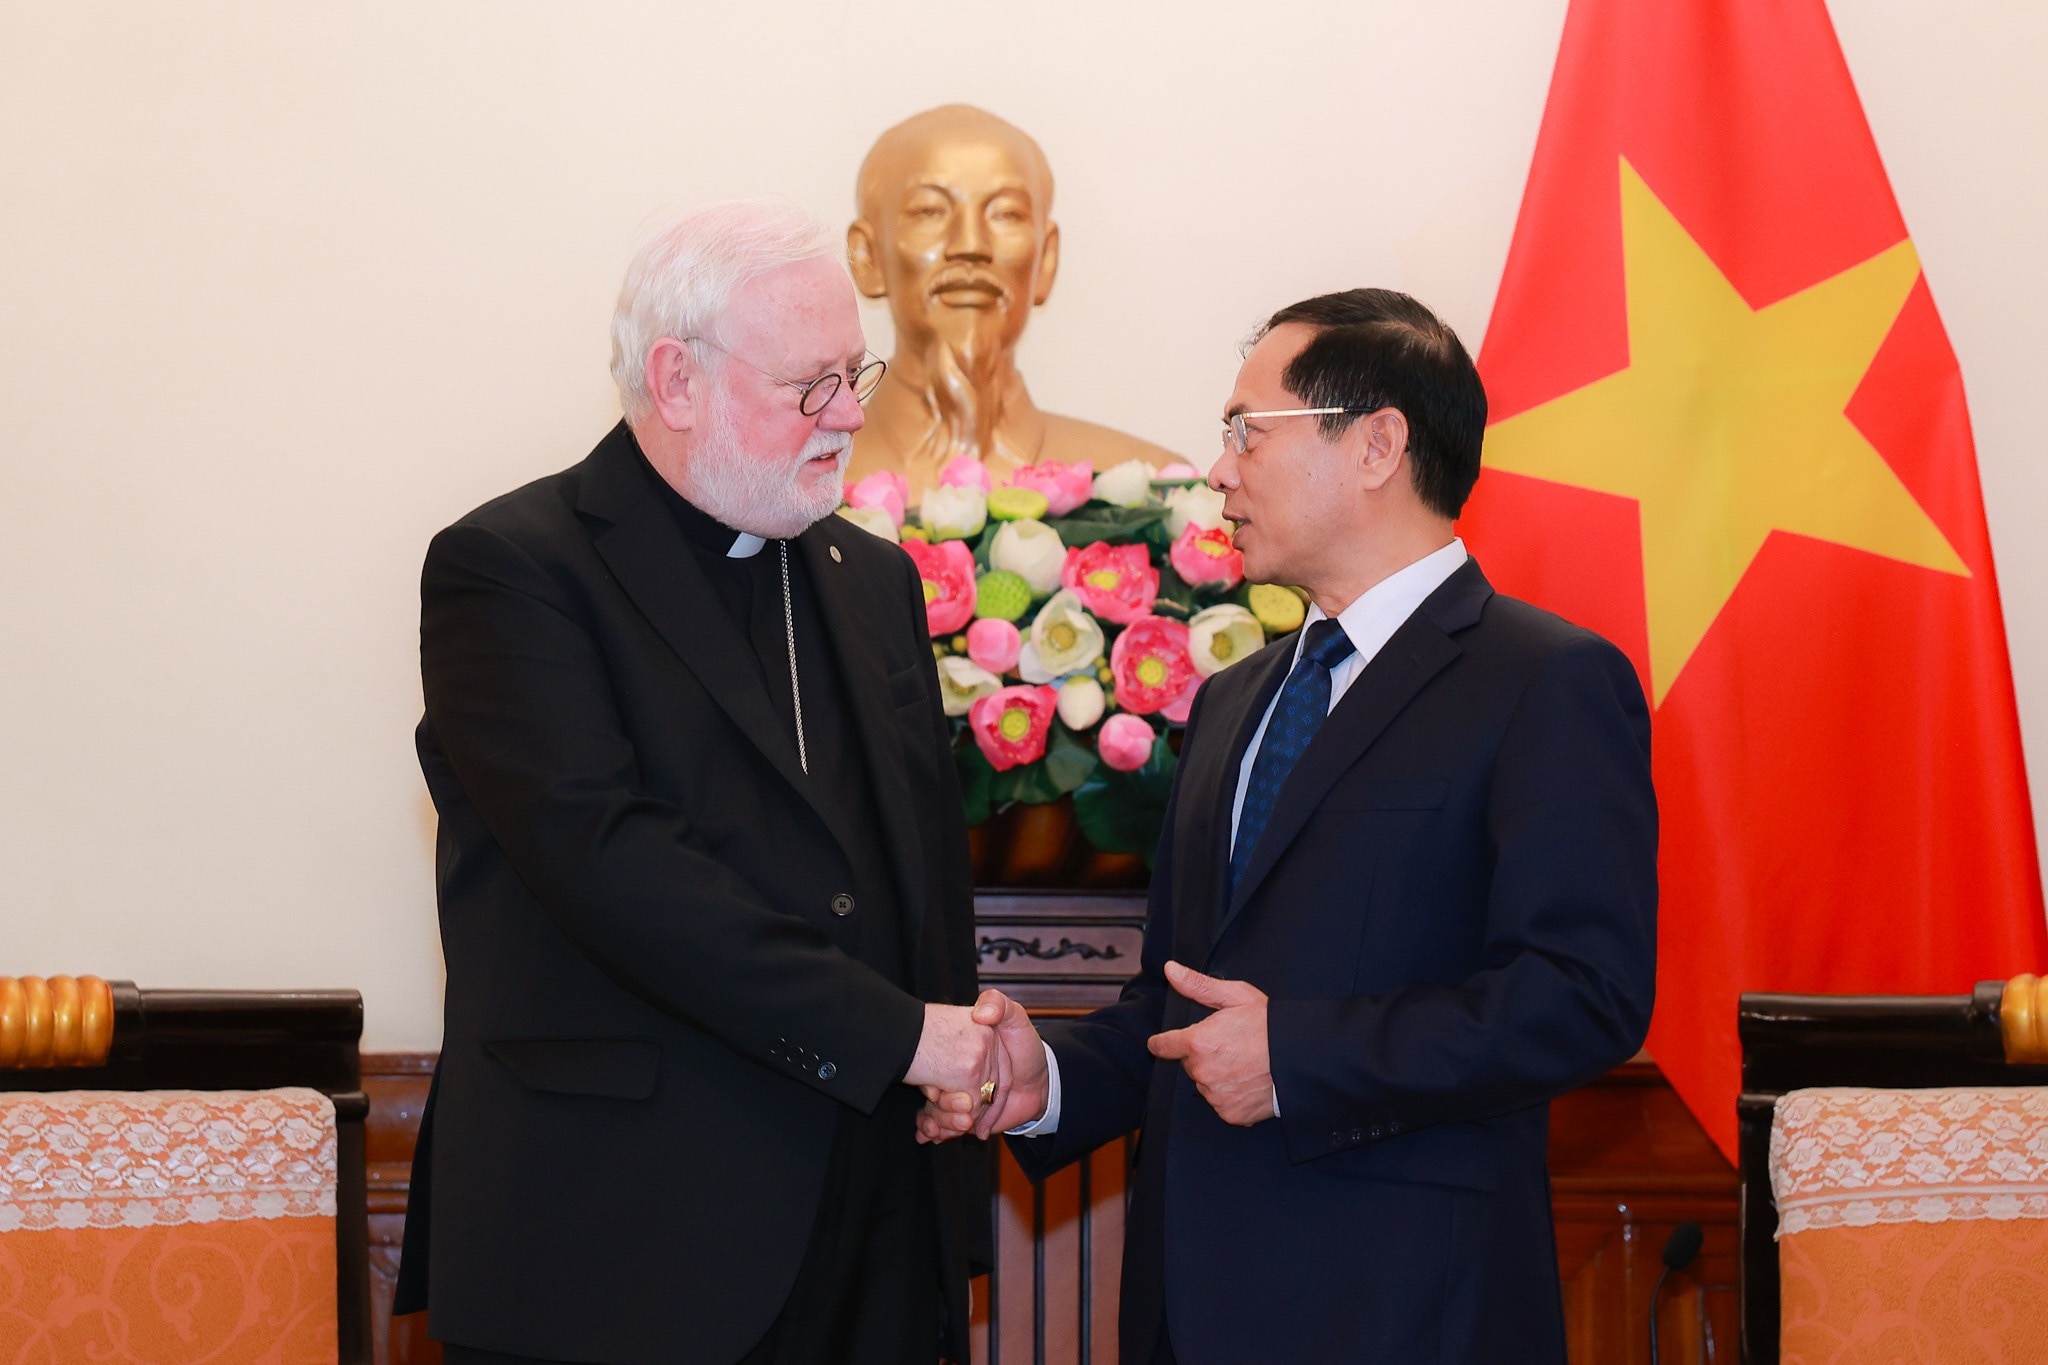 ويعتقد الوزير بوي ثانه سون أن الزيارة ستسهم في تعزيز العلاقات الطيبة بين فيتنام والفاتيكان. الصورة: هاي نجوين